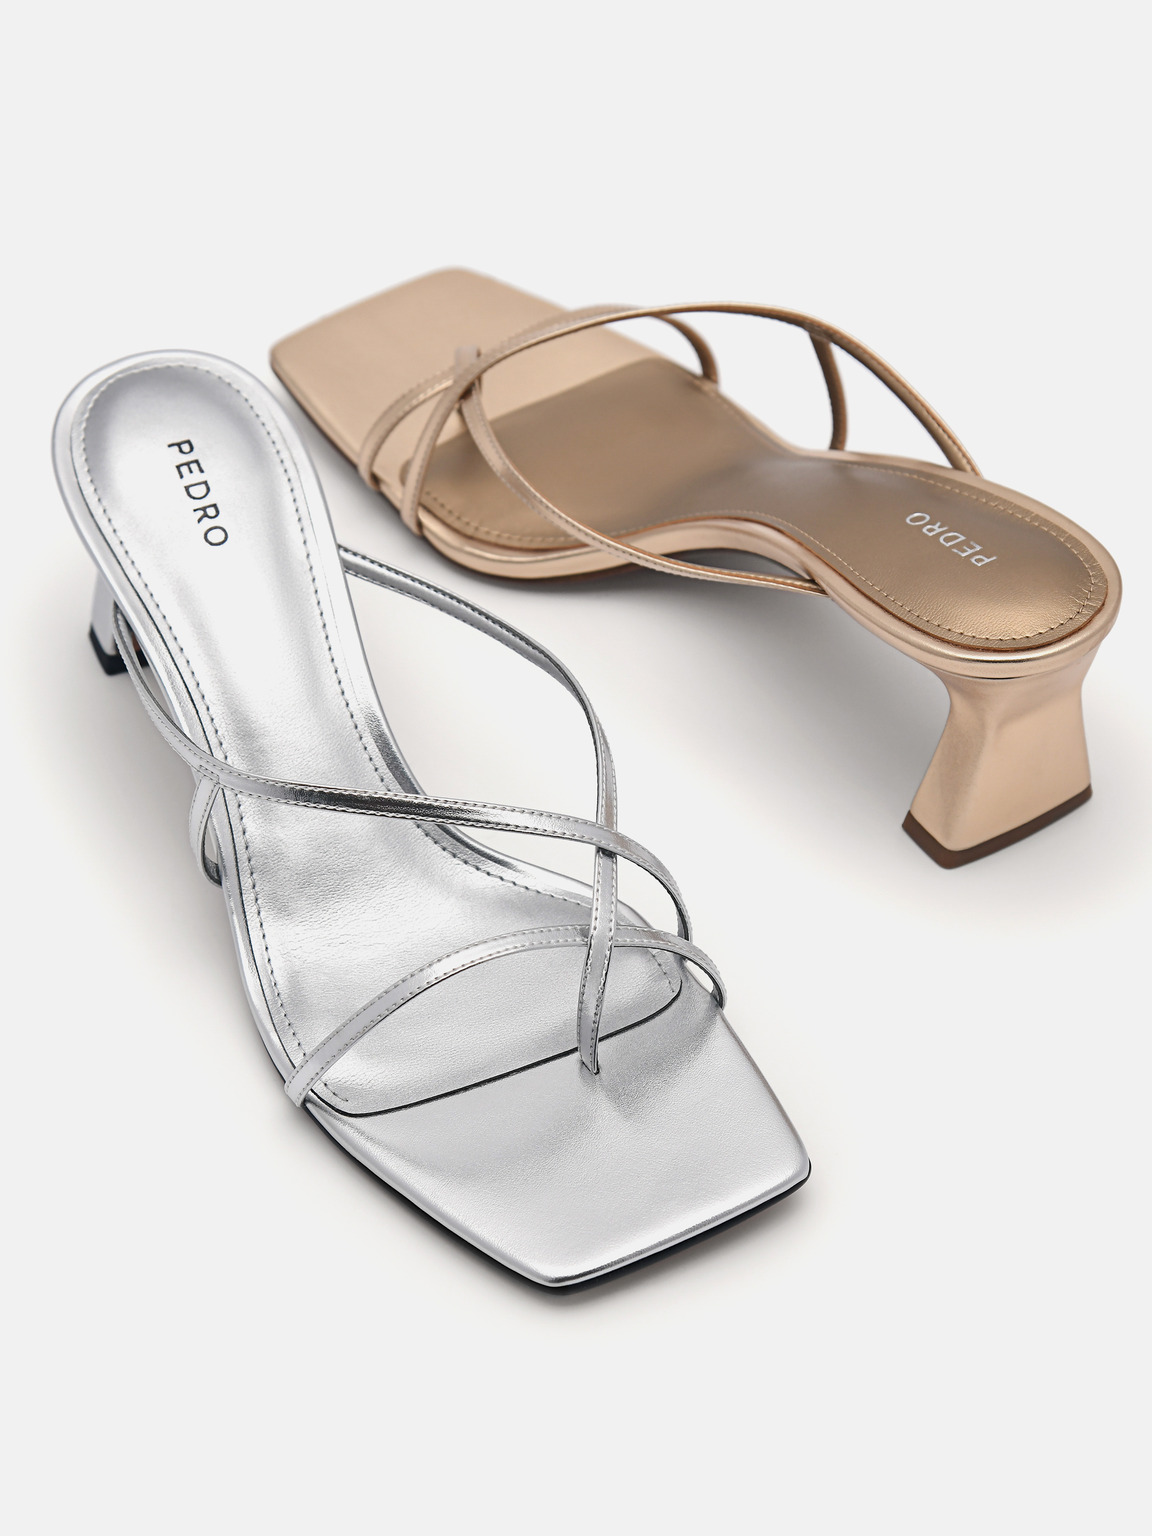 Gwyneth Heel Sandals, Silver